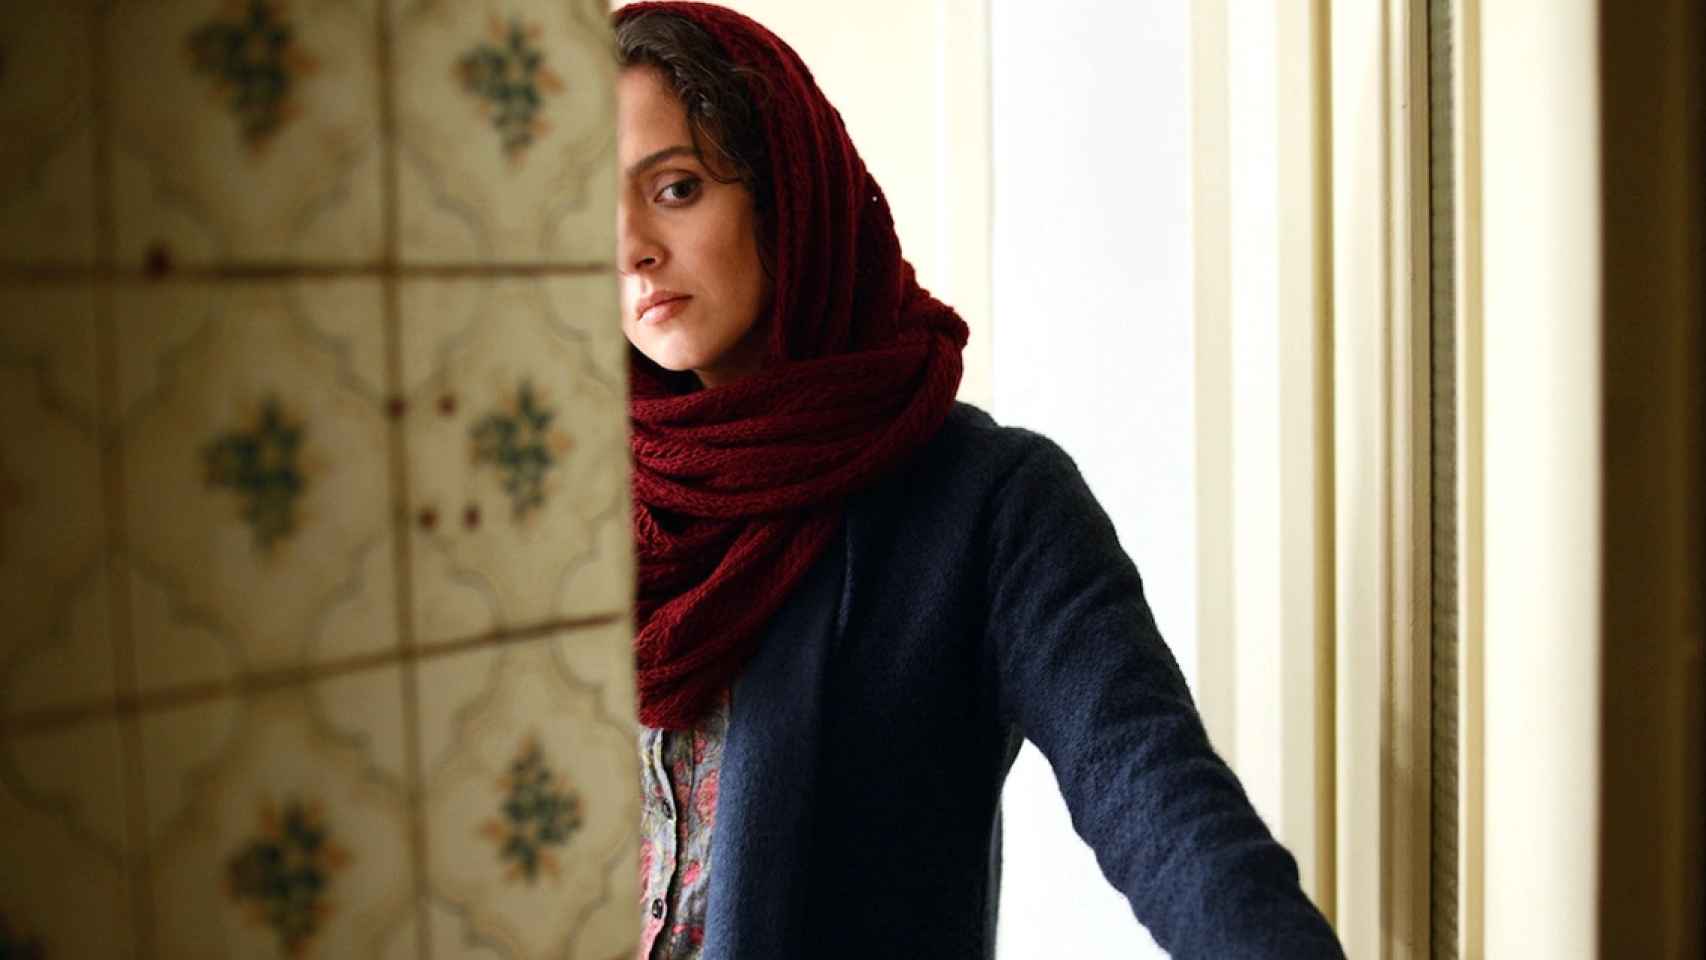 Fotografía promocional de la película 'El viajante' de Asghar Farhadi